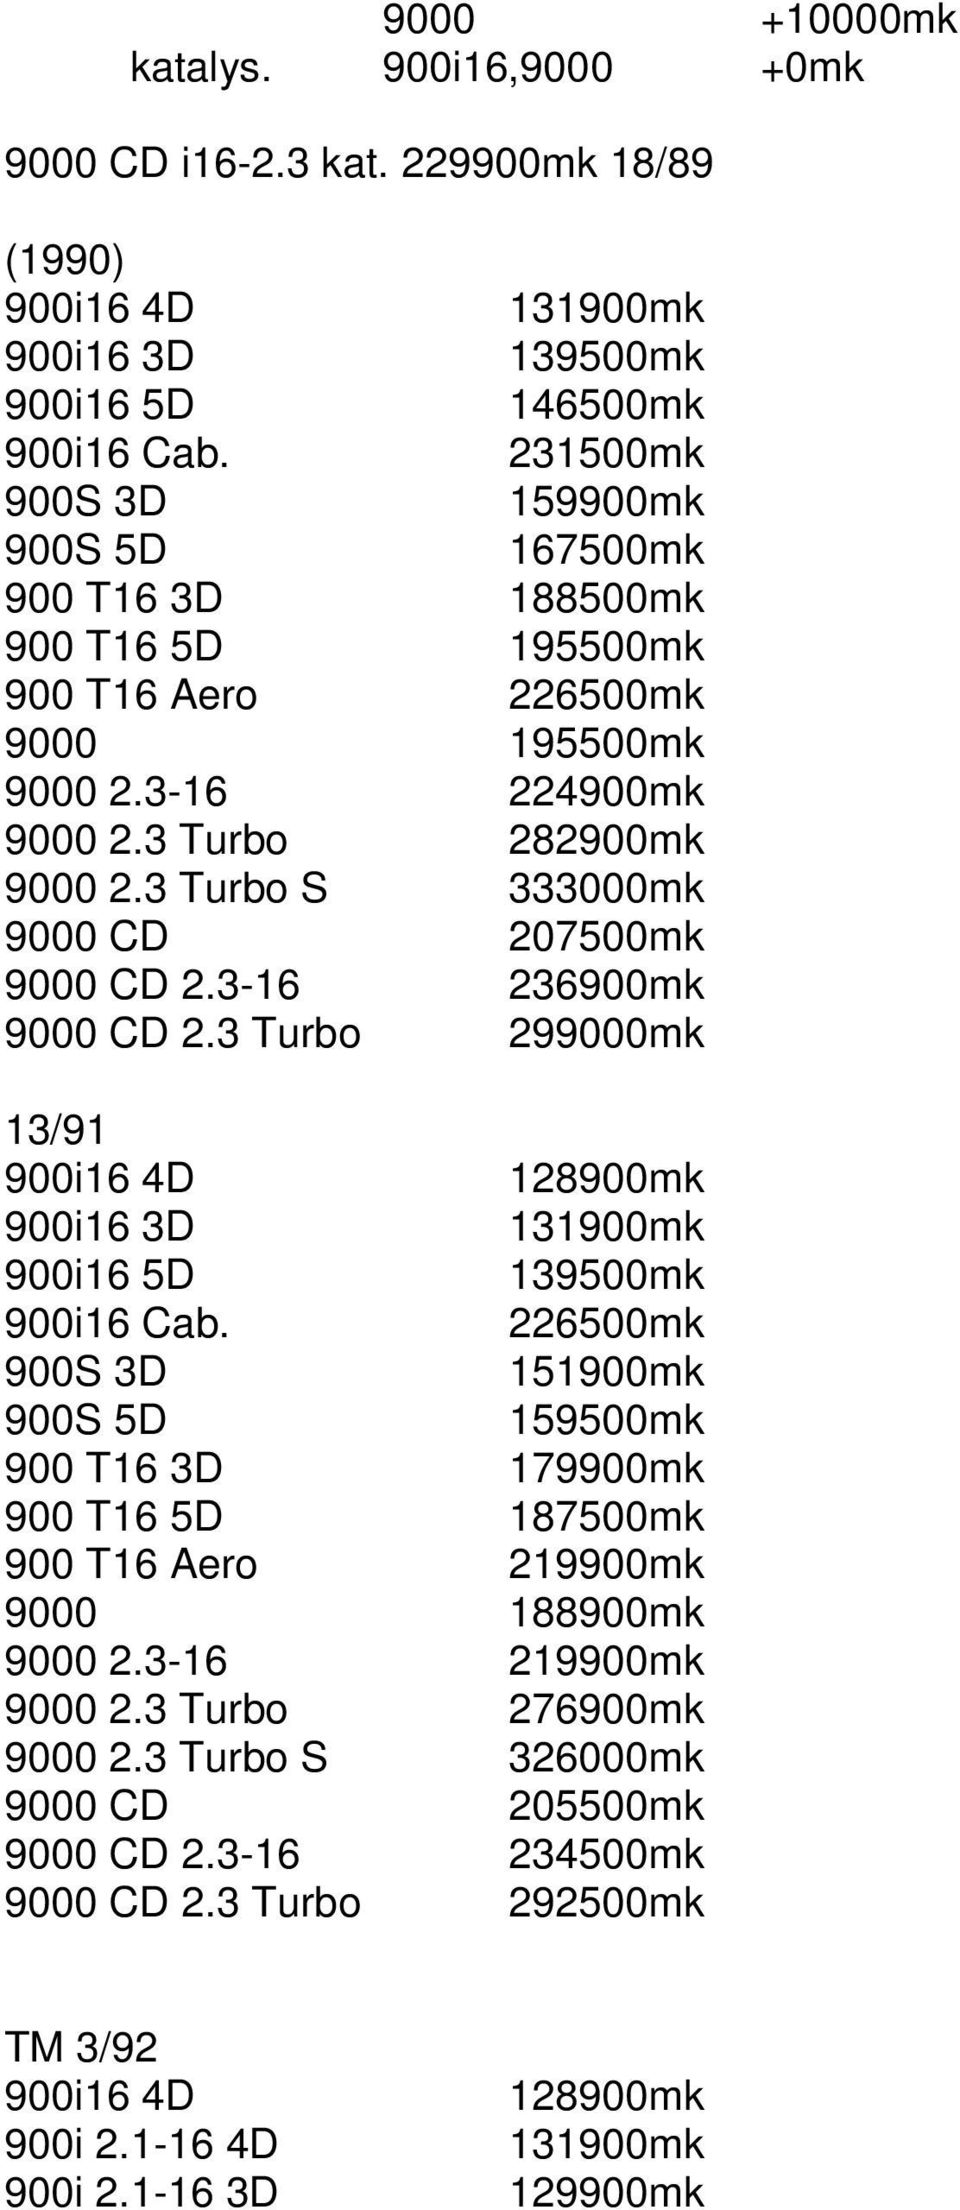 3 Turbo S 333000mk 9000 CD 207500mk 9000 CD 2.3-16 236900mk 9000 CD 2.3 Turbo 299000mk 13/91 900i16 4D 128900mk 900i16 3D 131900mk 900i16 5D 139500mk 900i16 Cab.